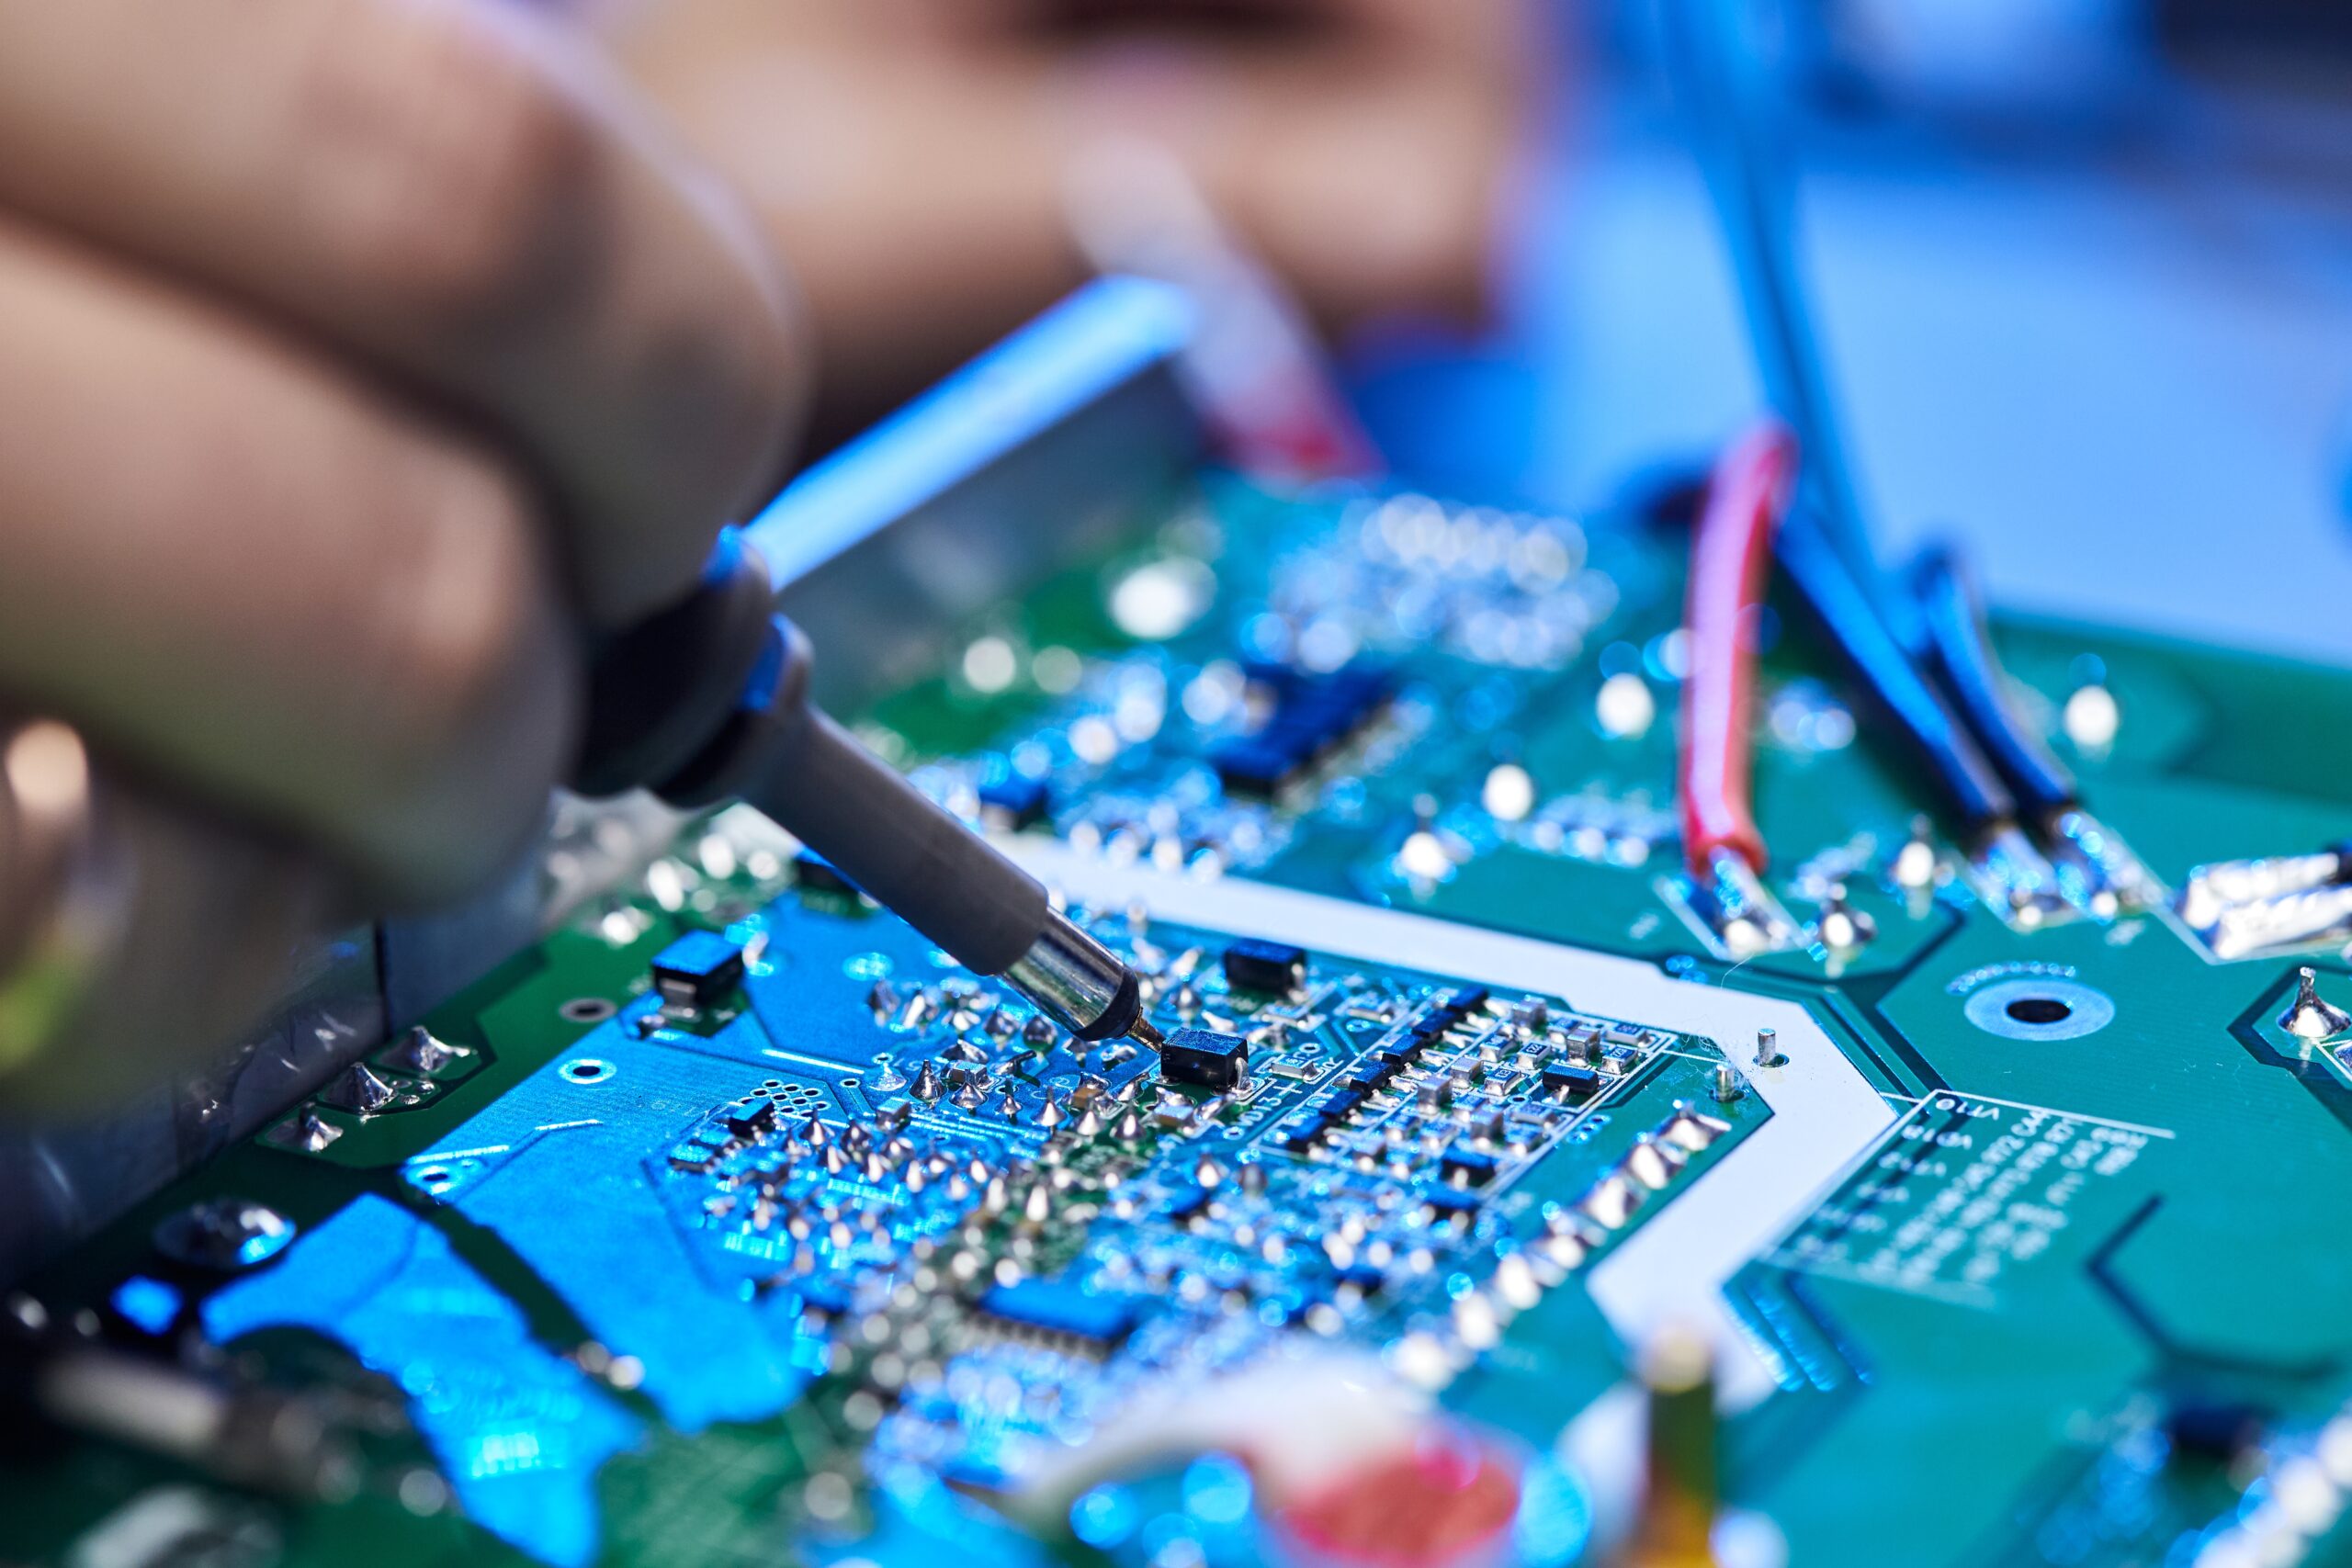 engineer is soldering a circuit board